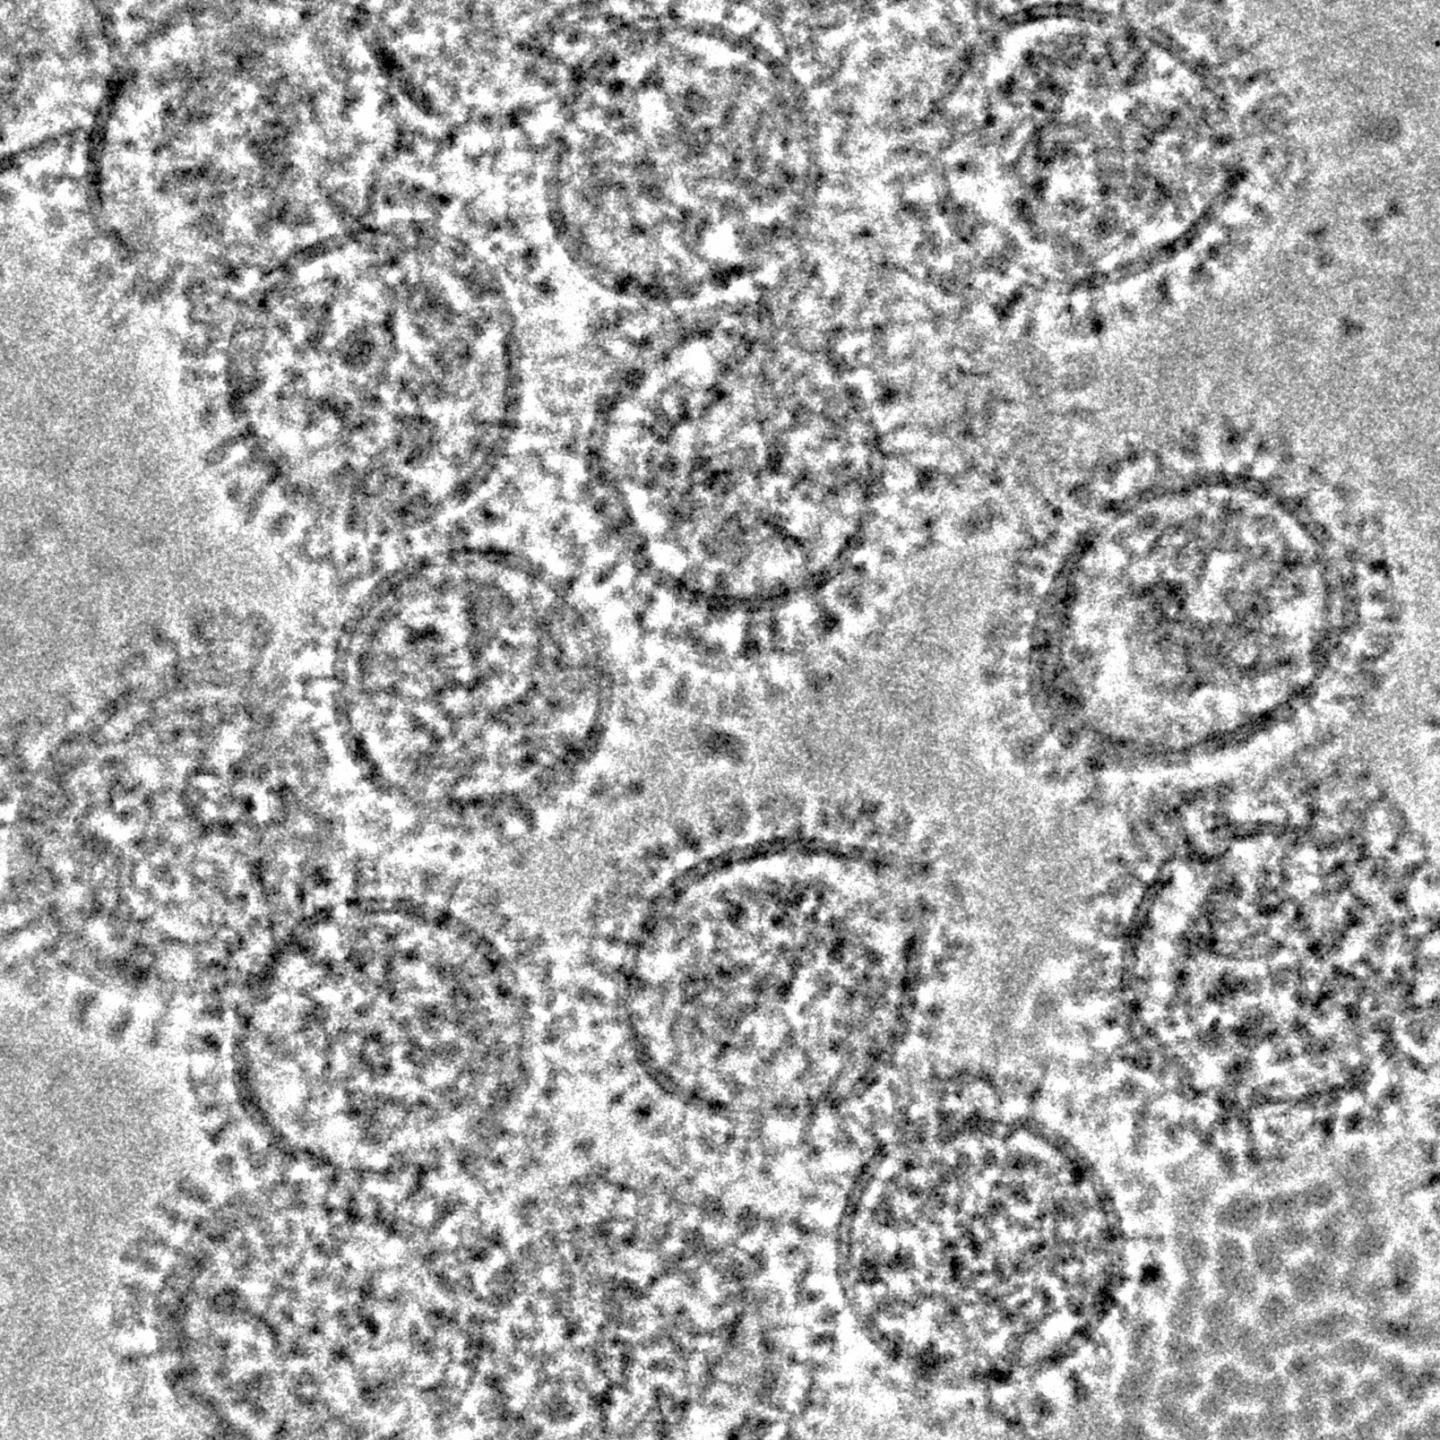 Cryo-electron Microscopy of Influenza A Viruses